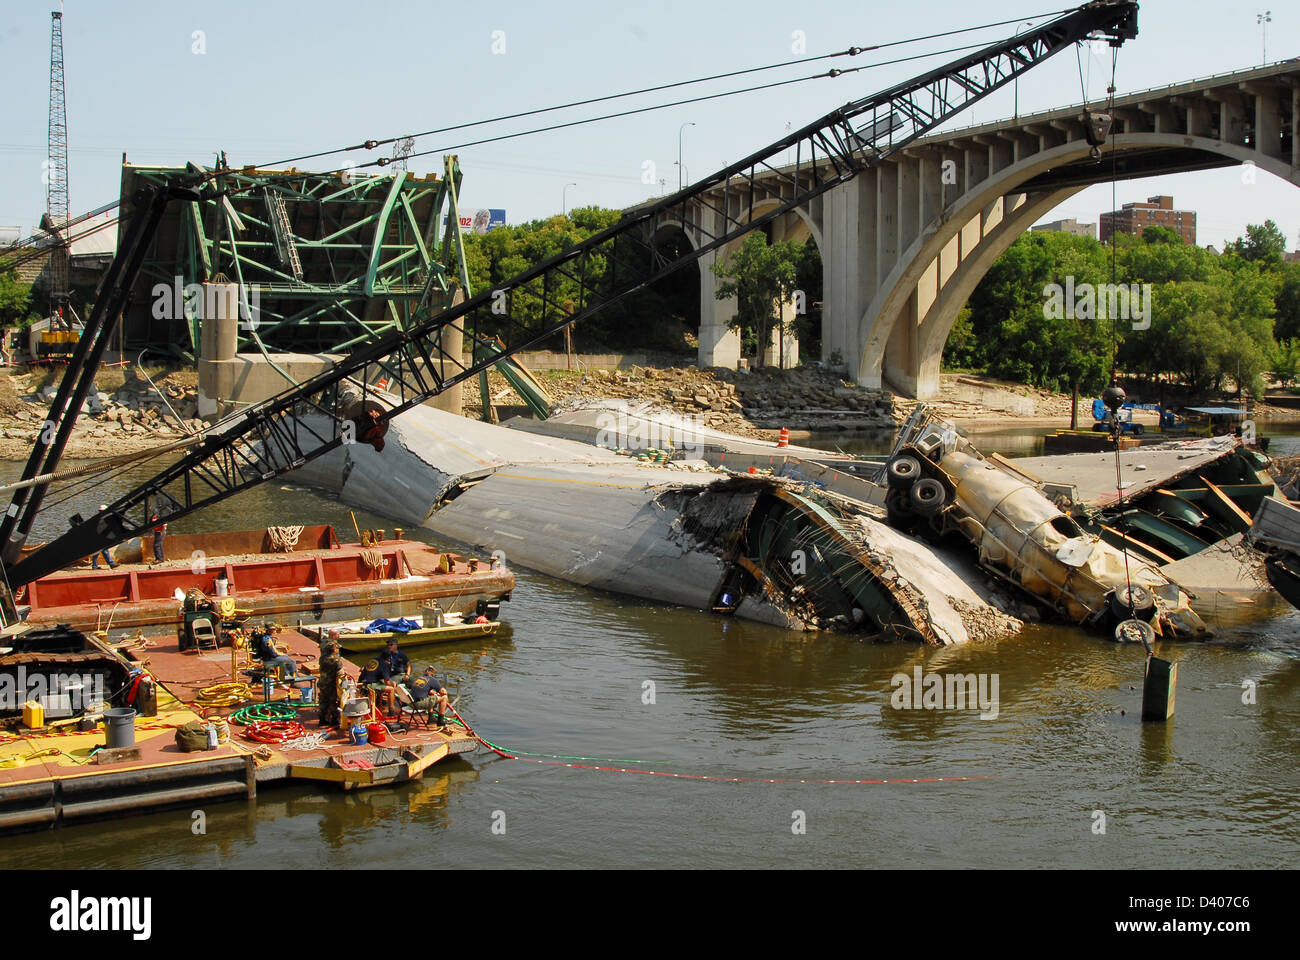 Blick auf die Reste der i-35 Brücke Zusammenbruch und Recovery Bemühungen 17. August 2007 in Minneapolis, MN. Die Brücke stürzte plötzlich während der Feierabendverkehr auf 1. August 2007 13 Menschen getötet und 145 verletzt. Stockfoto